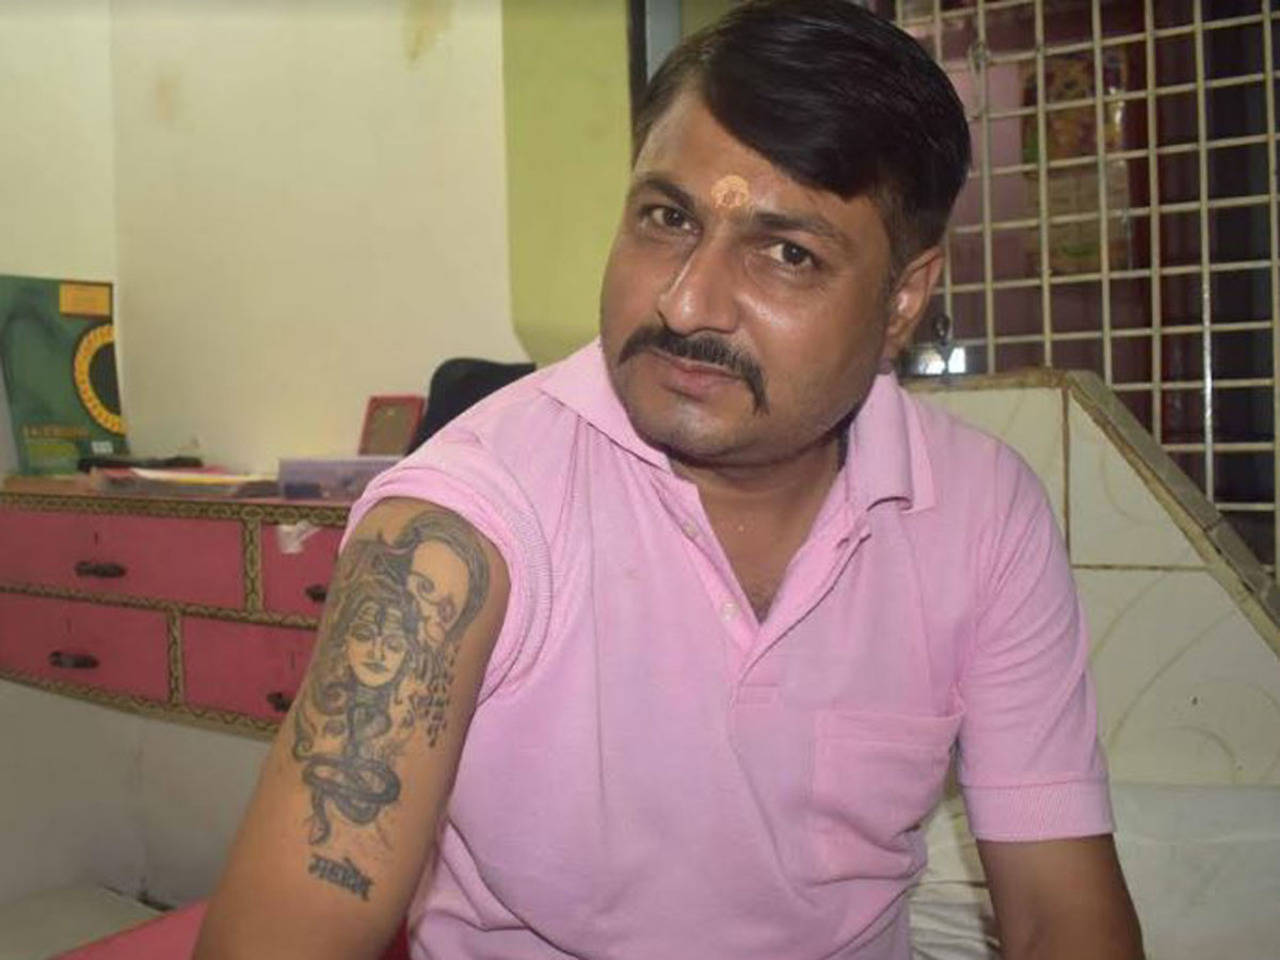 Mahadev Tattoo Design  Lord Shiva Trishul Tattoo Design  Om Tattoo  Neck  Tattooshorts  YouTube